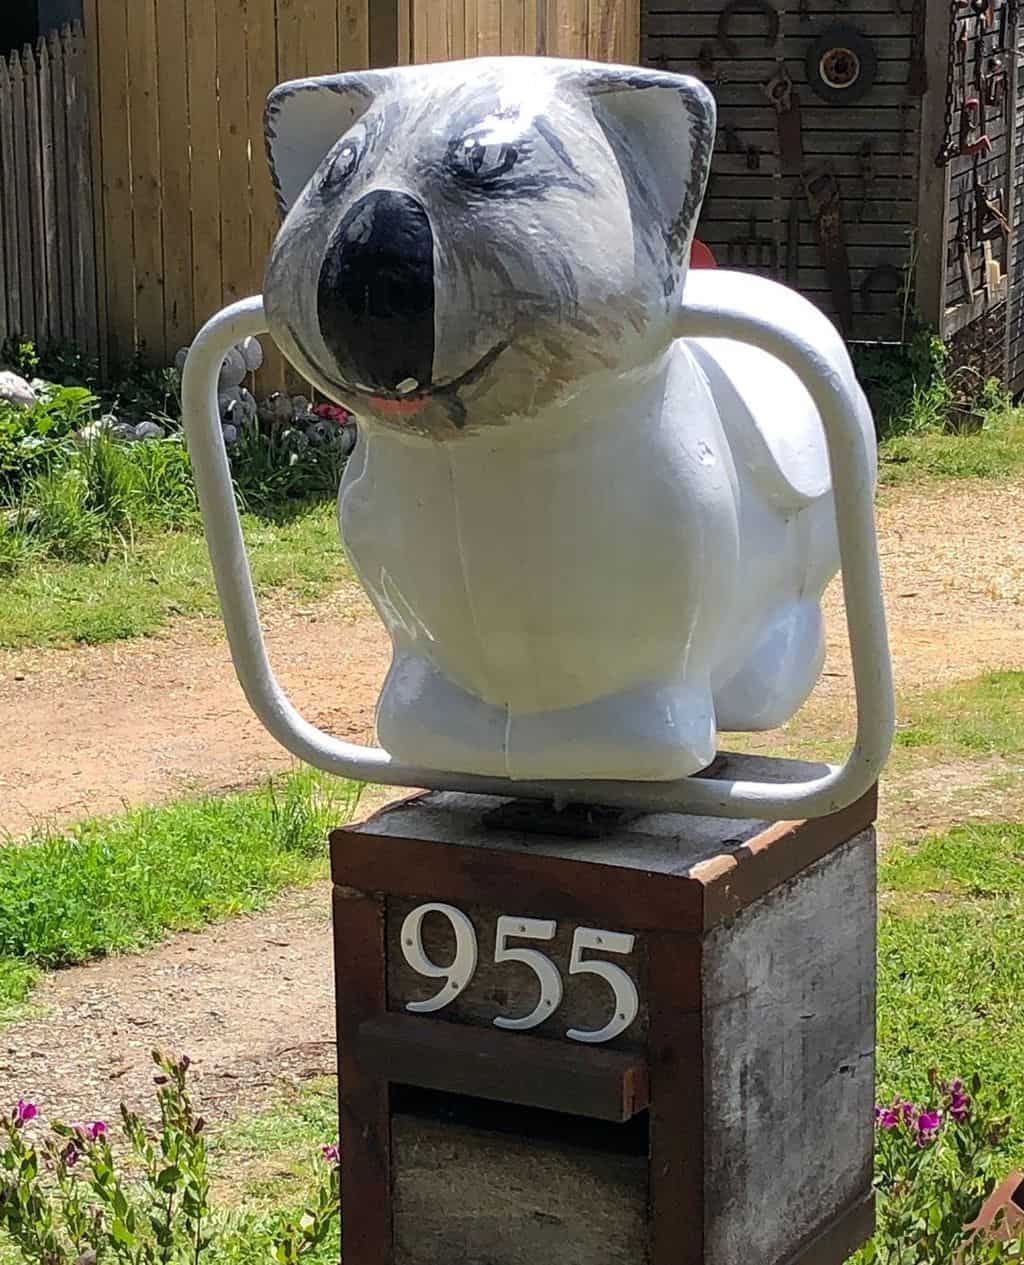 Koala with handles?